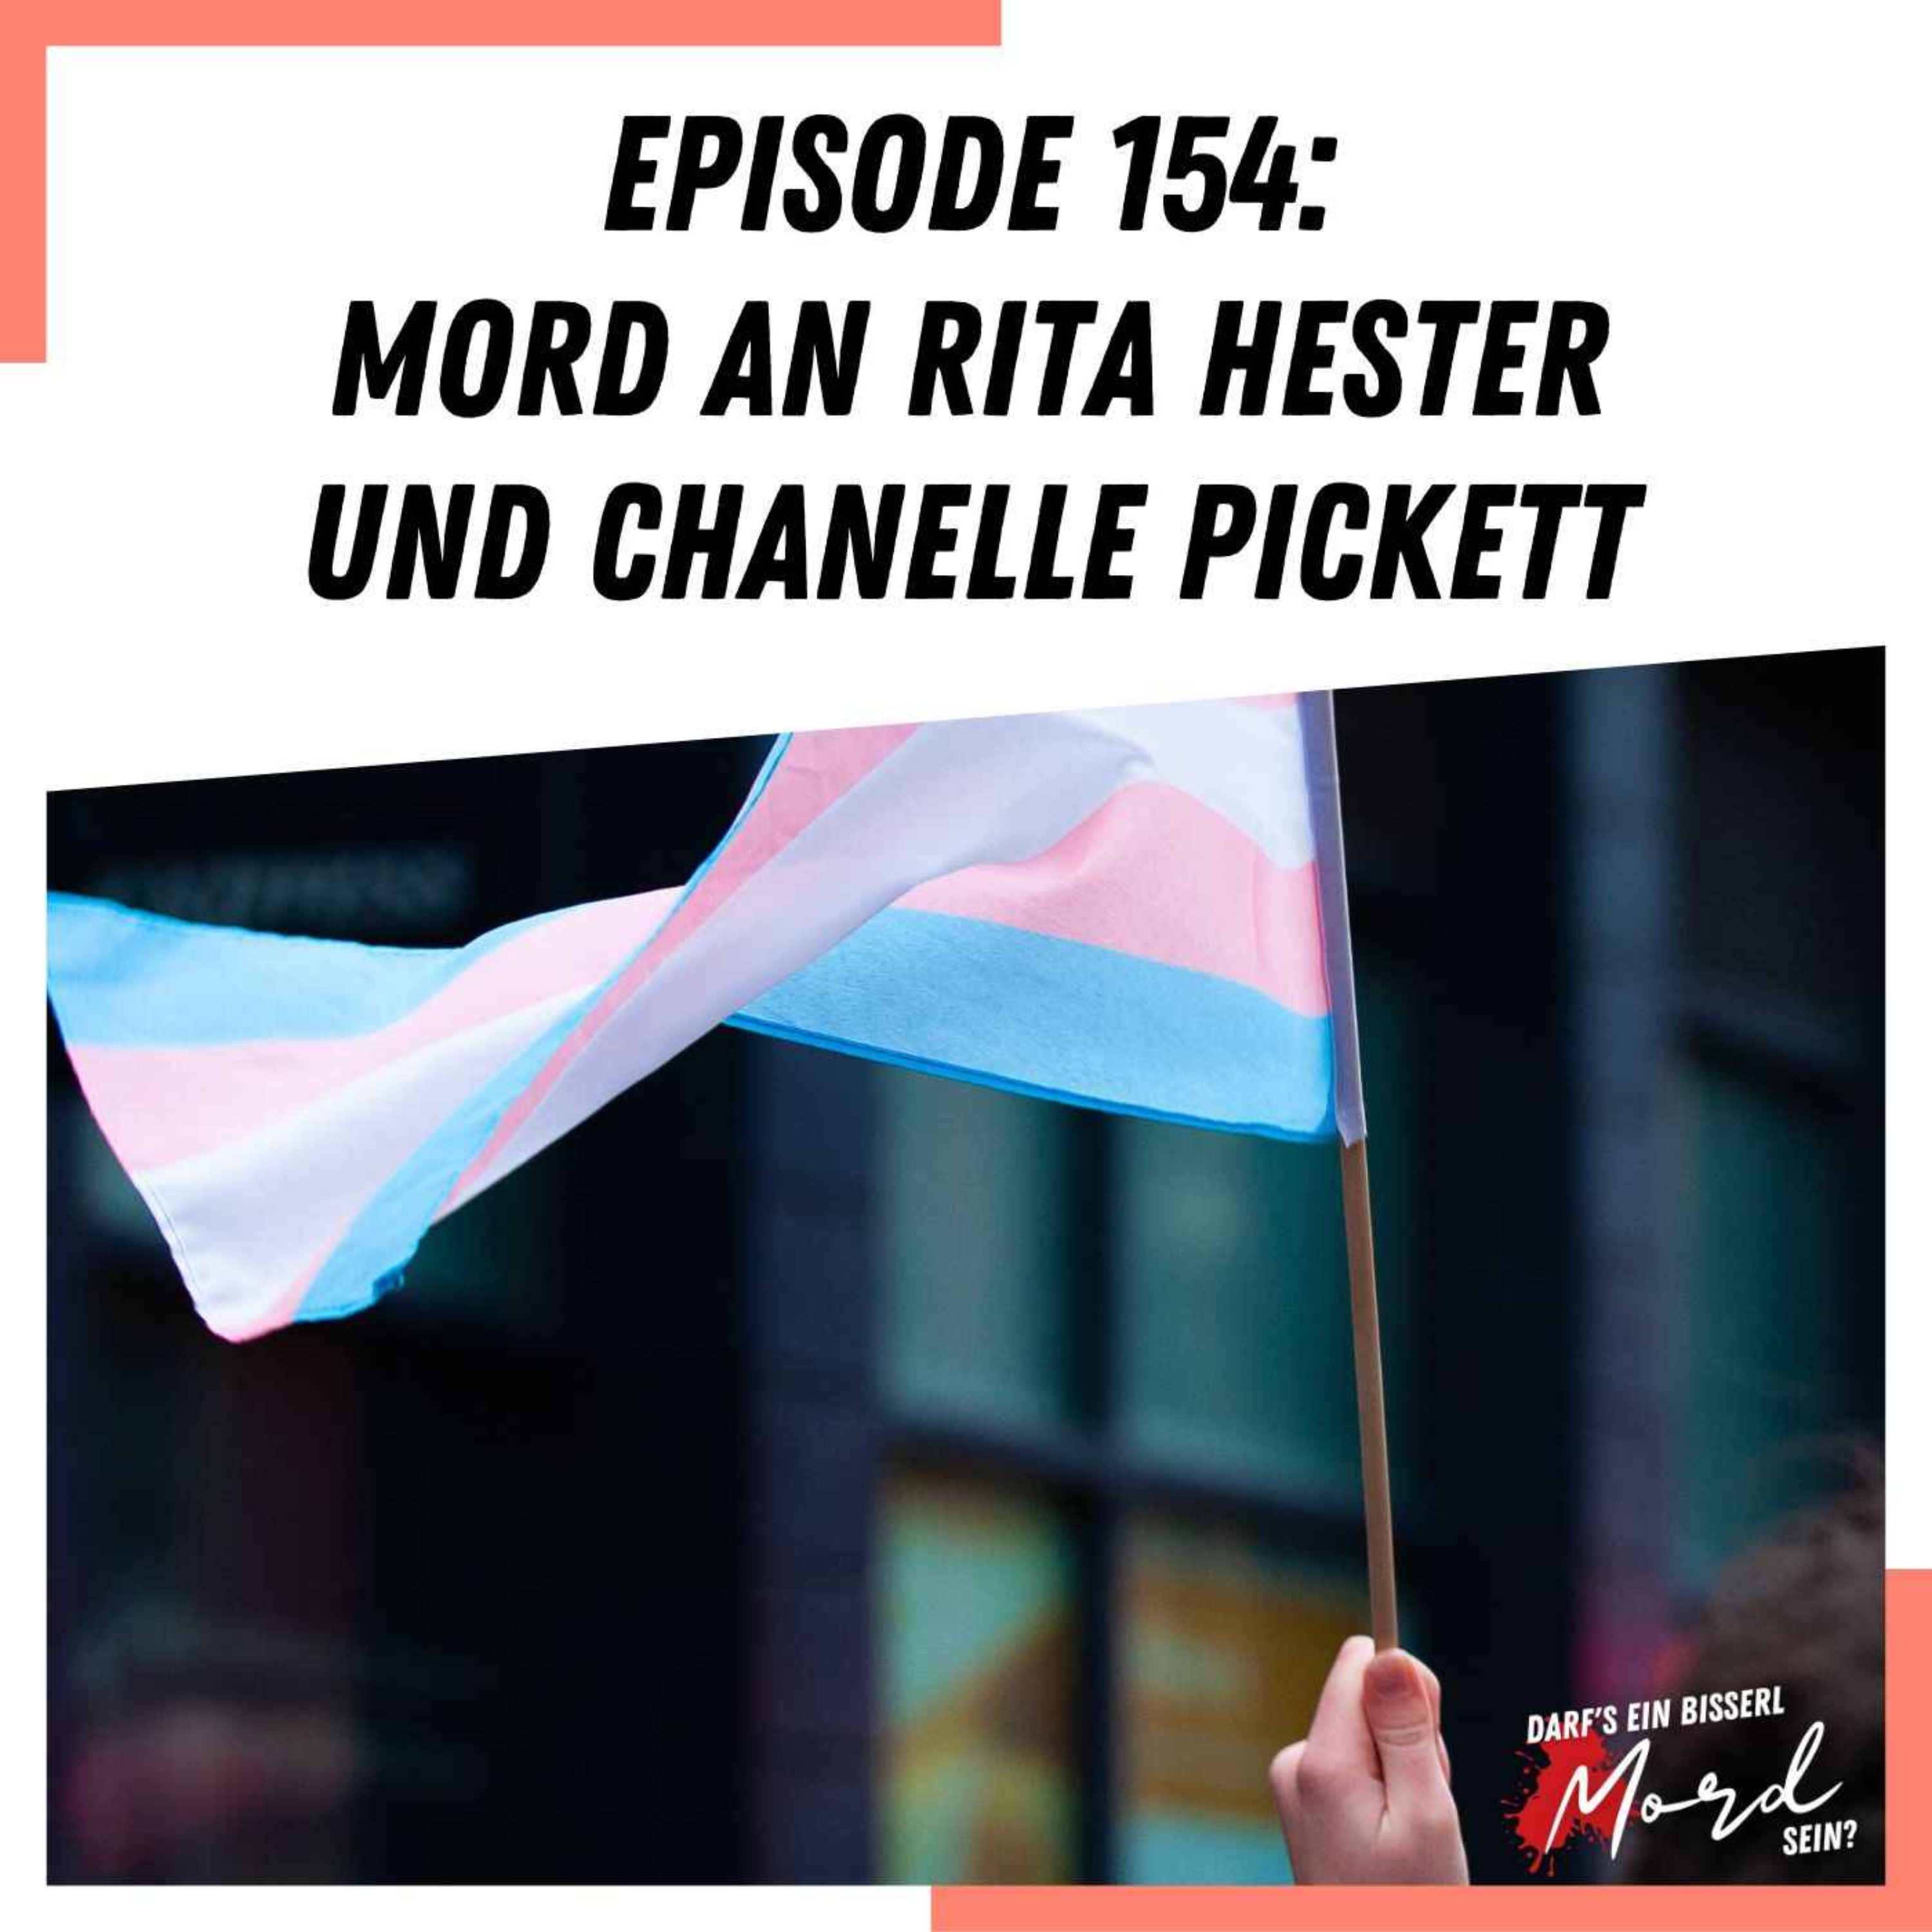 Episode 154: Mord an Rita Hester und Chanelle Pickett